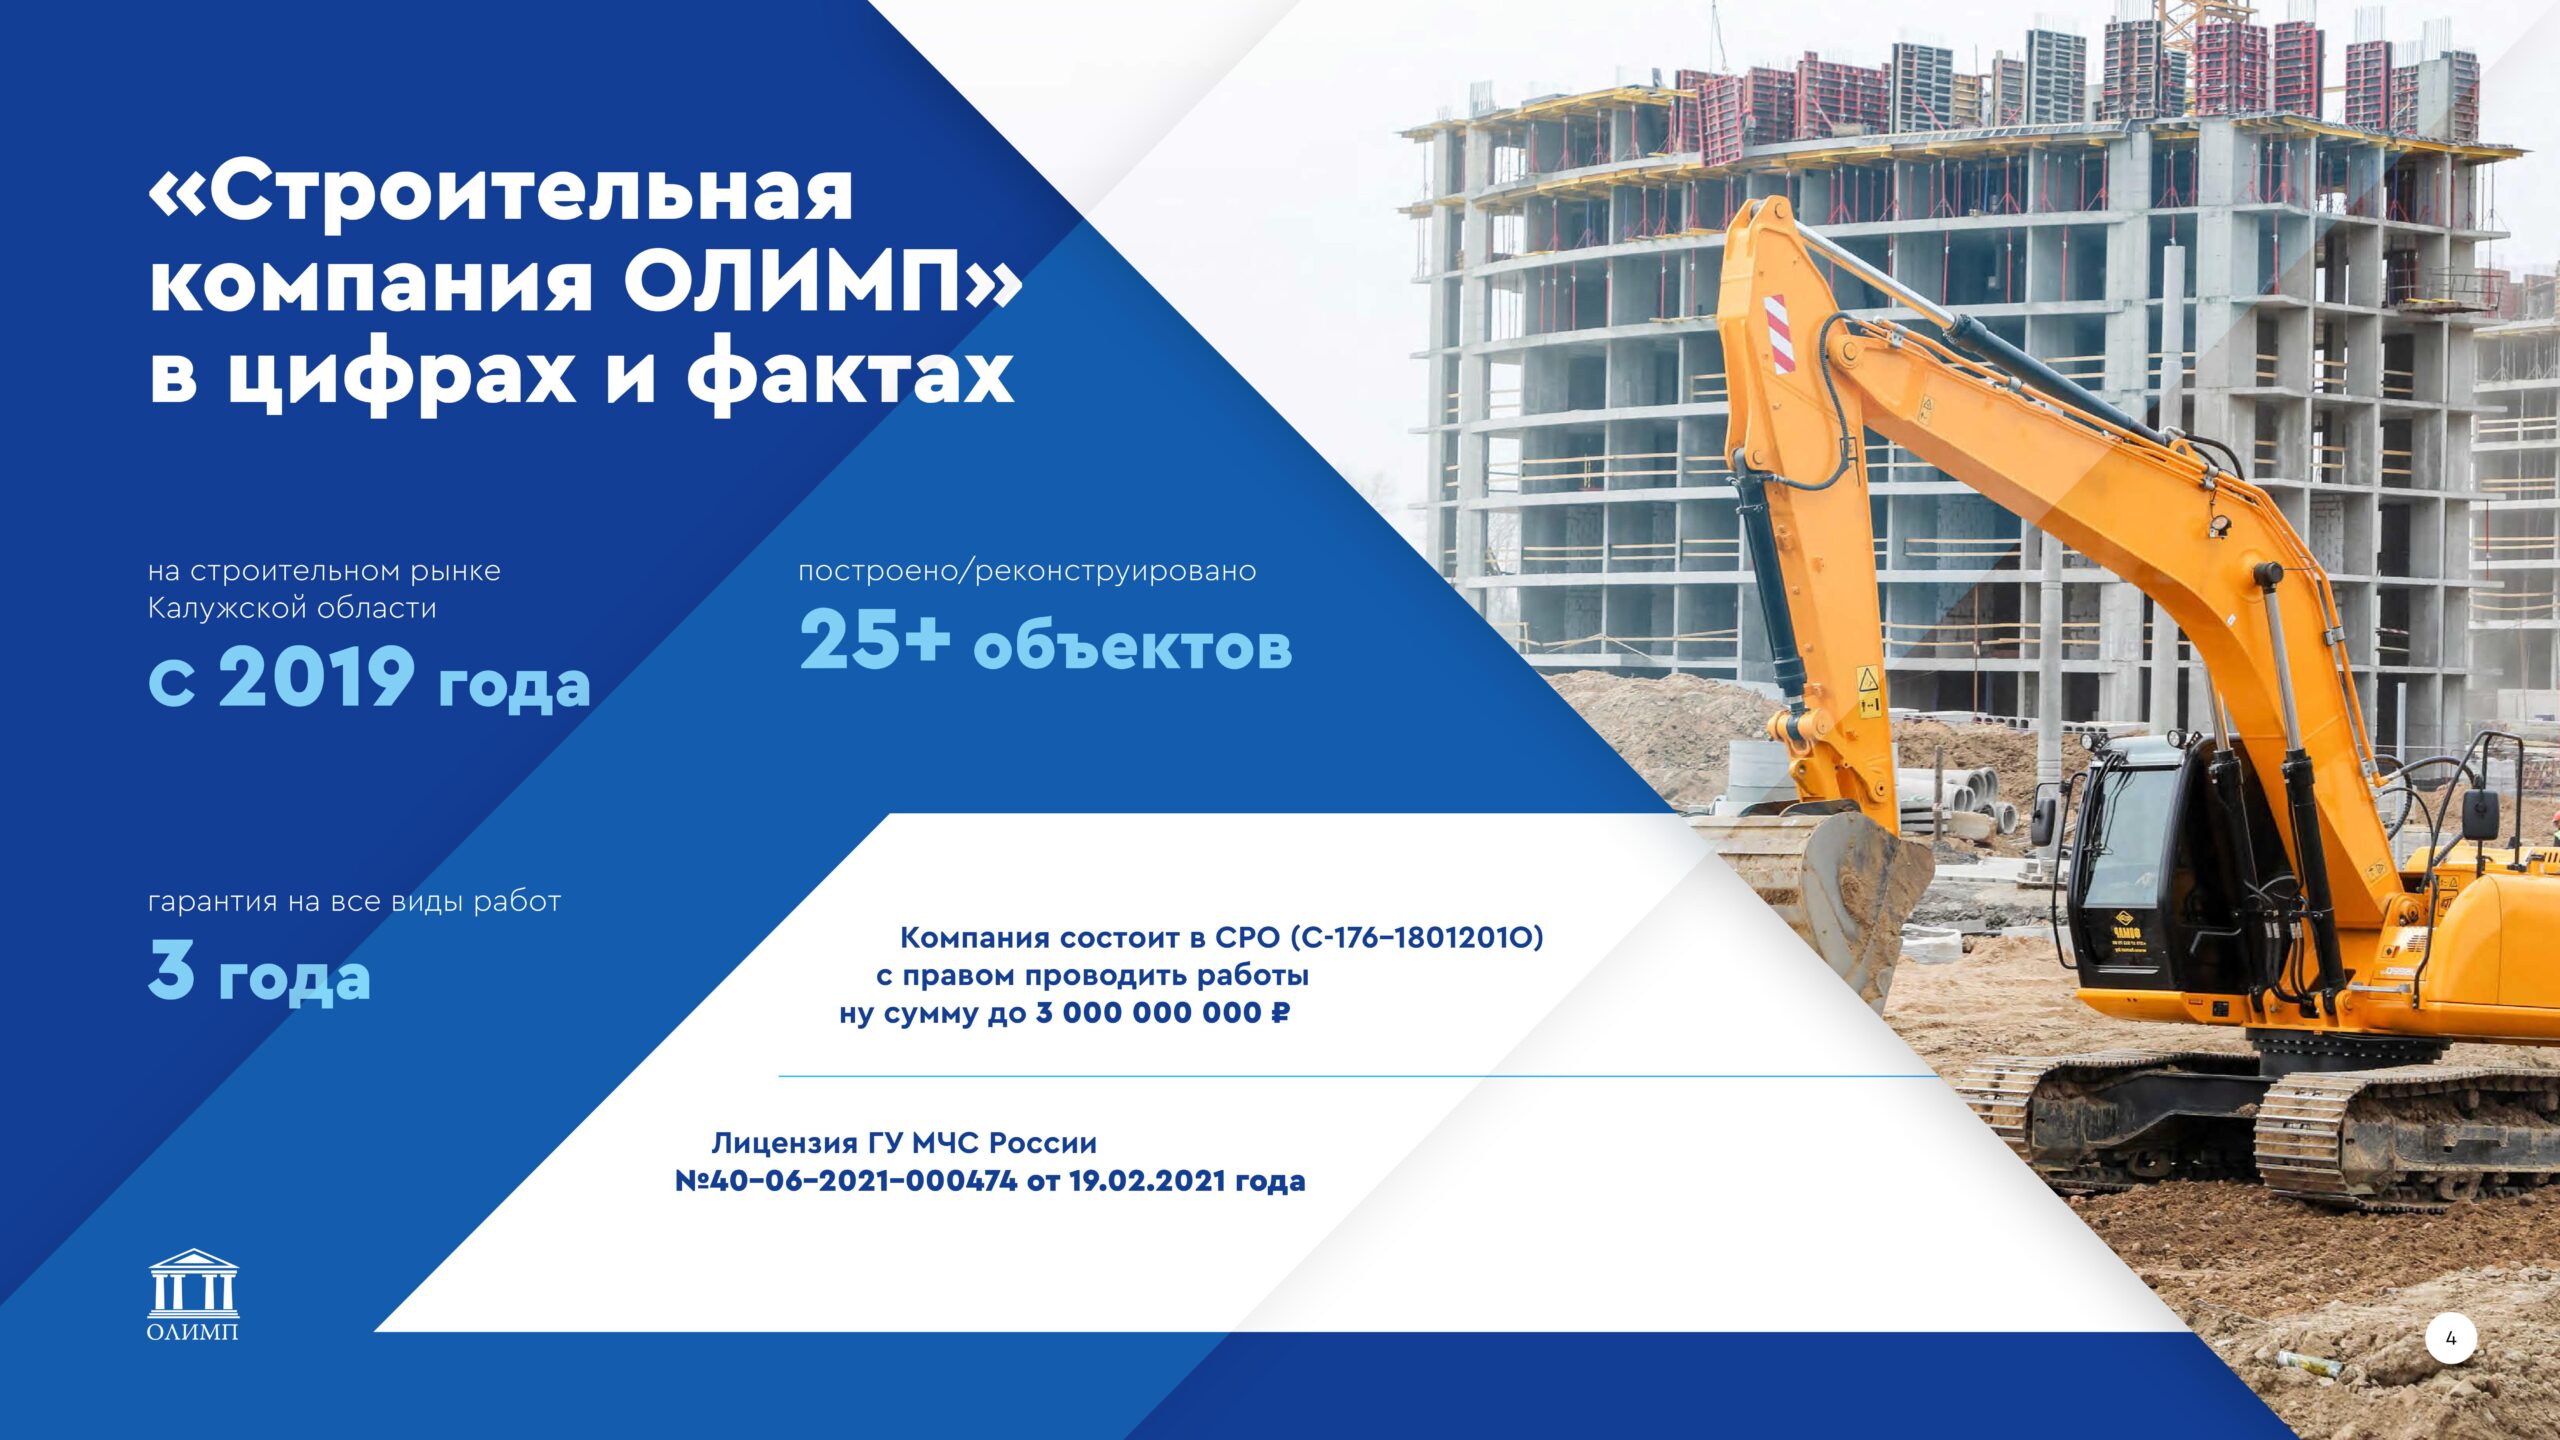 Презентация строительной компании — функция генерального подрядчика слайд 3